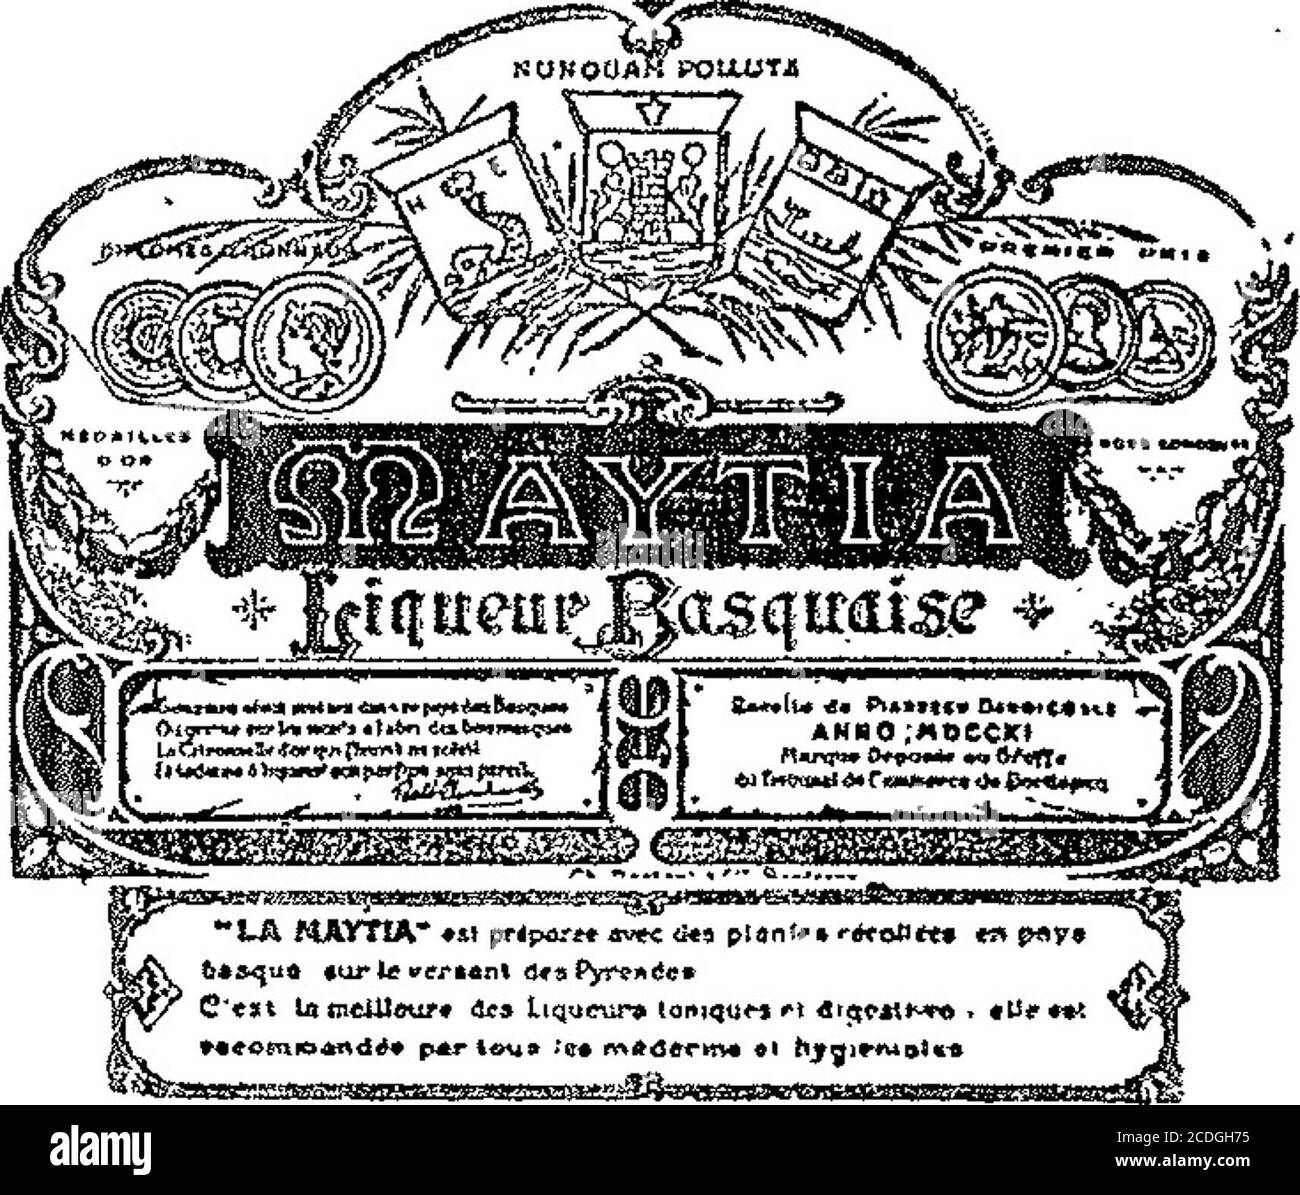 Boletin Oficial De La Republica Argentina 1908 1ra Seccion Febrero 15 De 1908 Miguel V Voglhnt